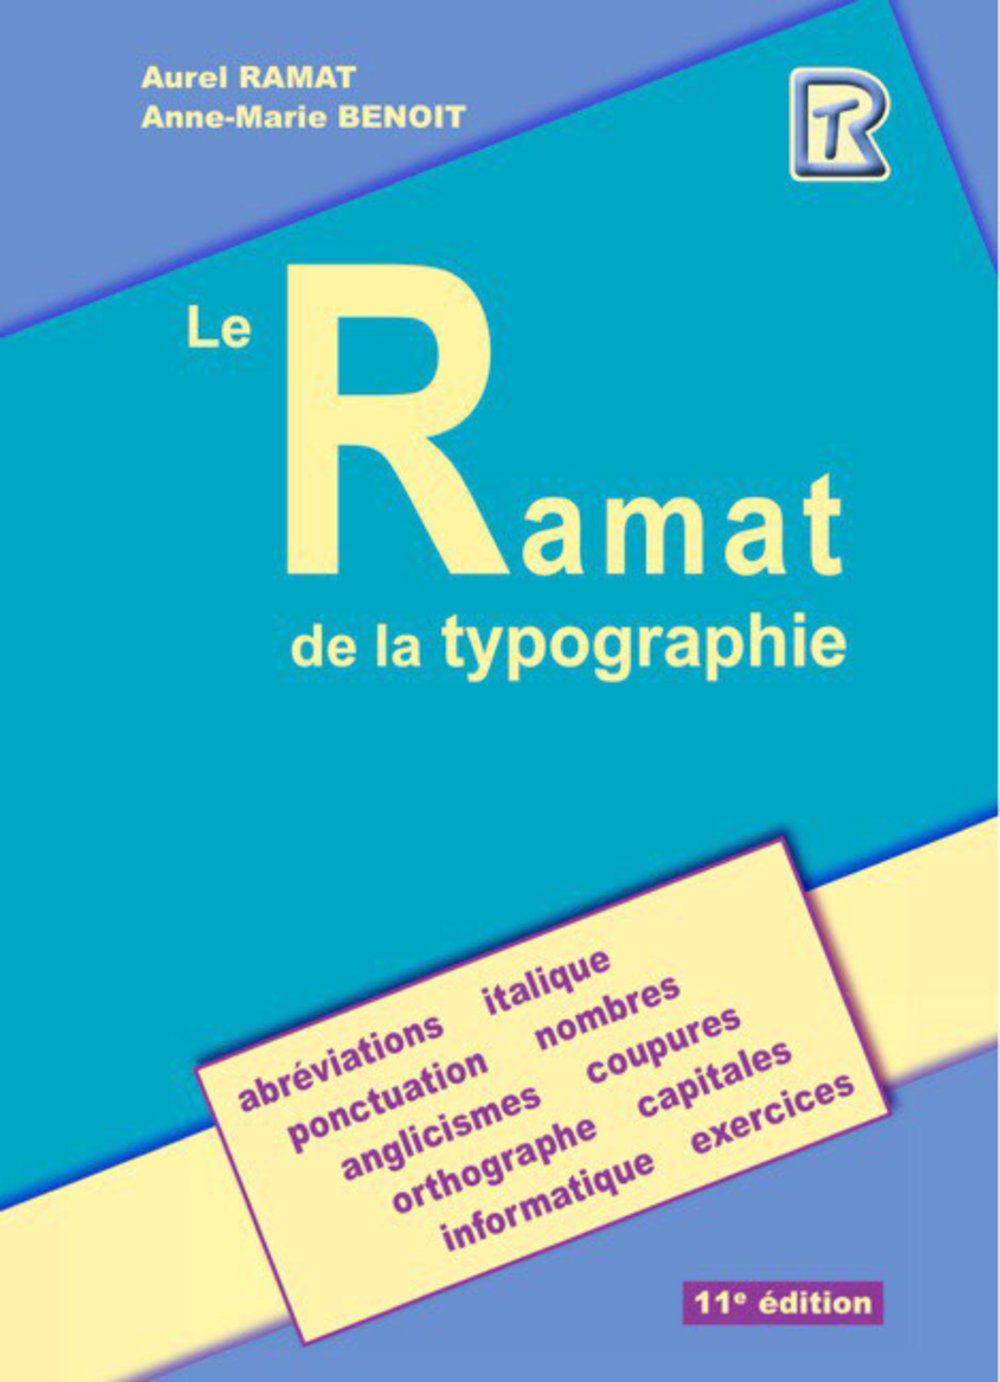 Le Ramat de la typographie - Aurel Ramat